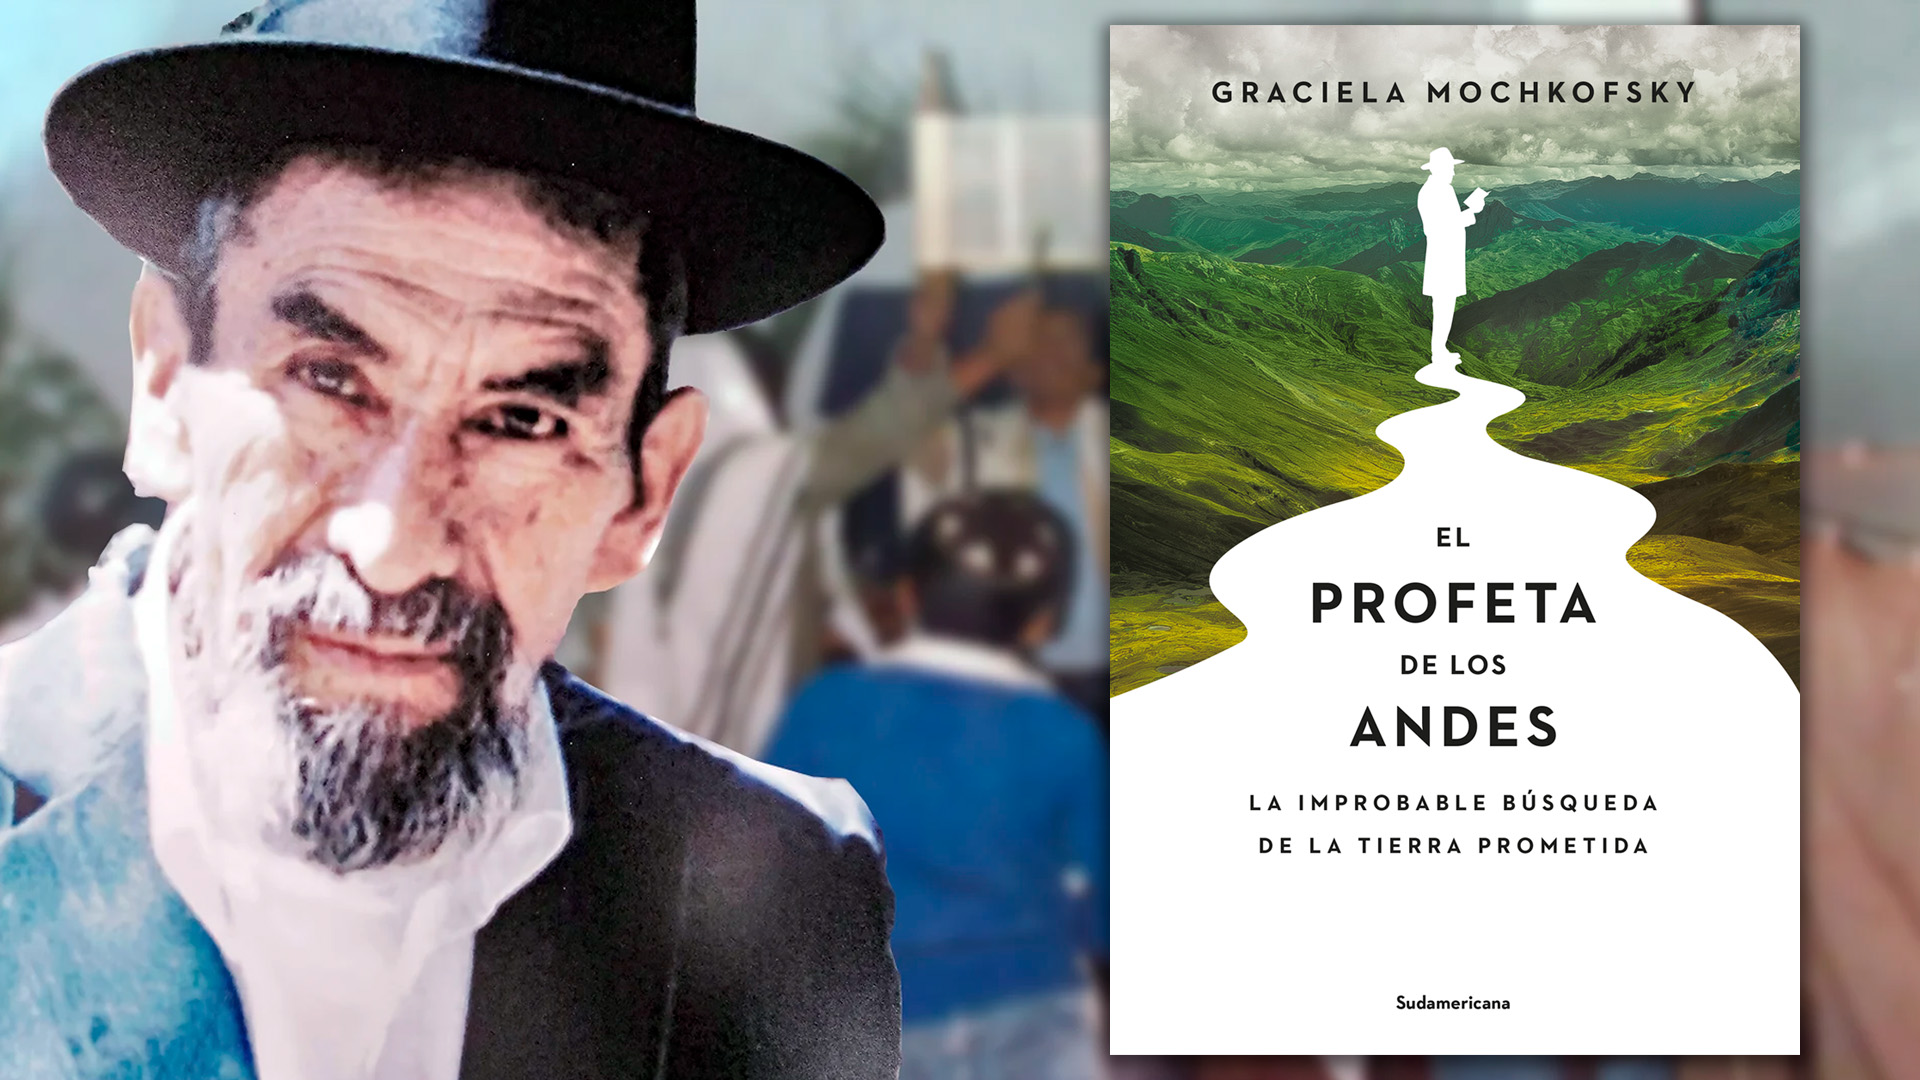 “El profeta de los Andes”: cómo un carpintero peruano convirtió a cientos de cristianos al judaísmo